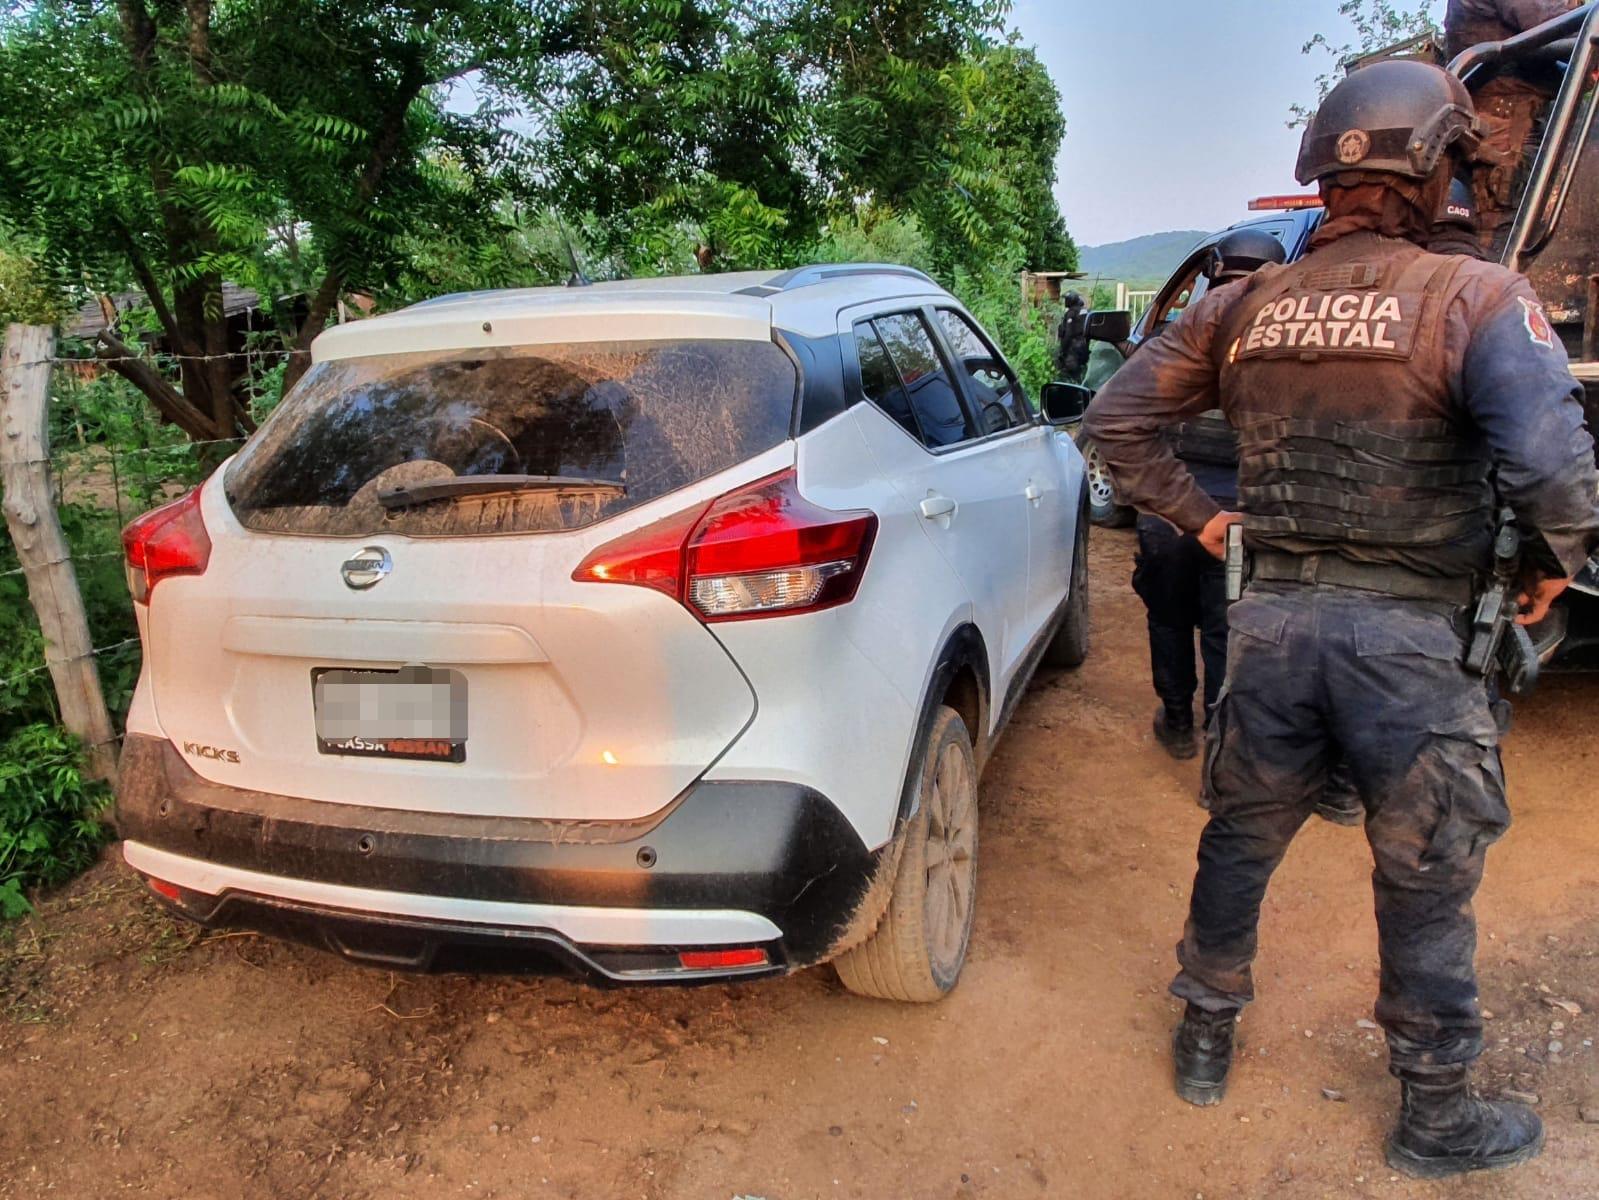 $!Sedena y PEP aseguran fusiles de alto poder, equipo táctico y un vehículo robado, en Alcoyonqui, Culiacán